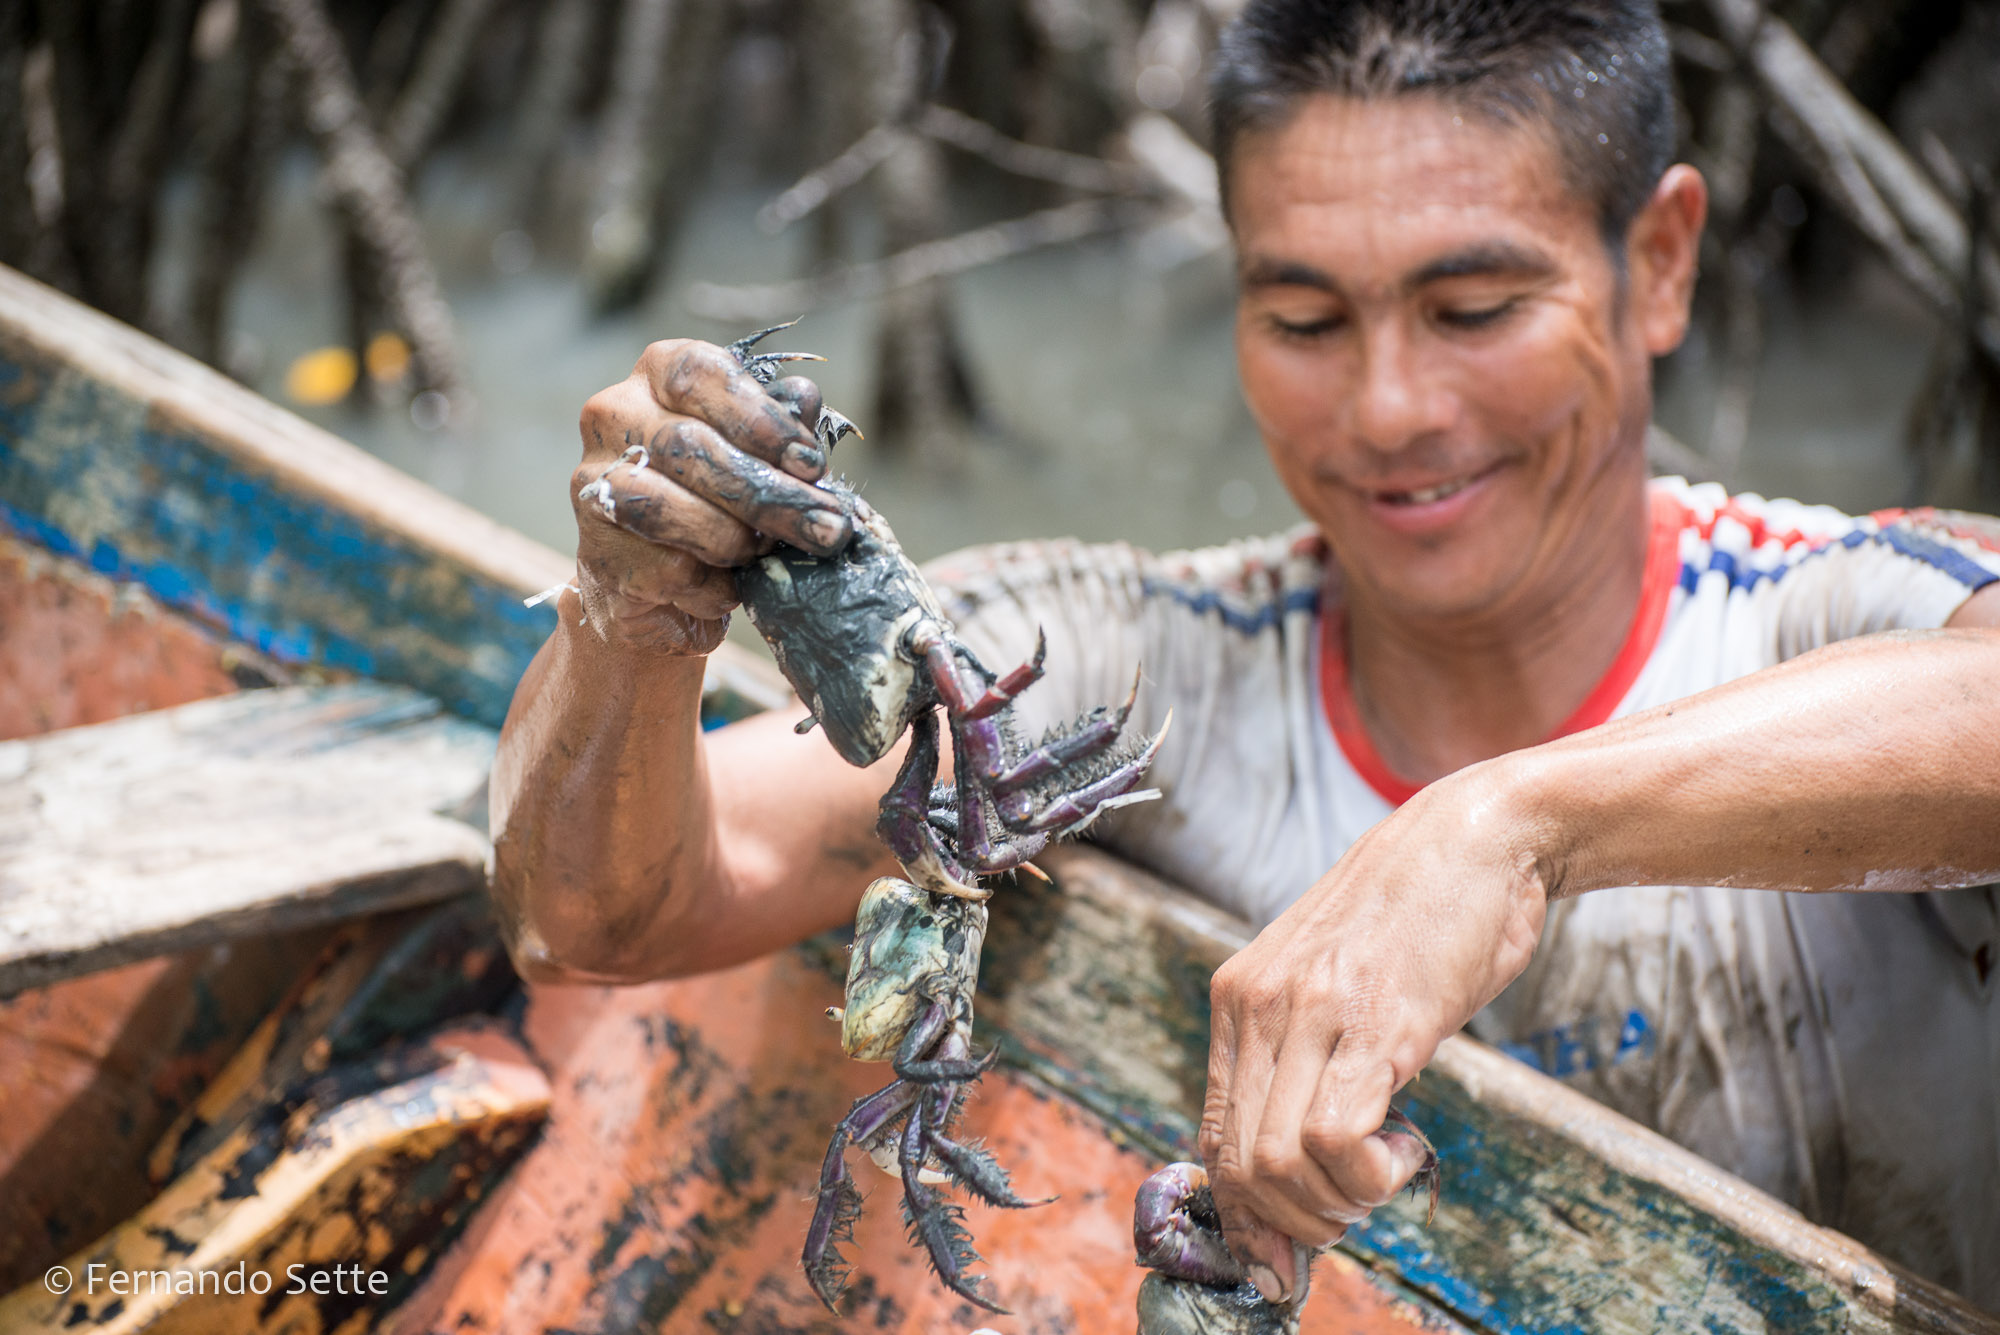 Manejo sustentável de caranguejo é tema de cartilha educativa lançada pelo Instituto Mamirauá